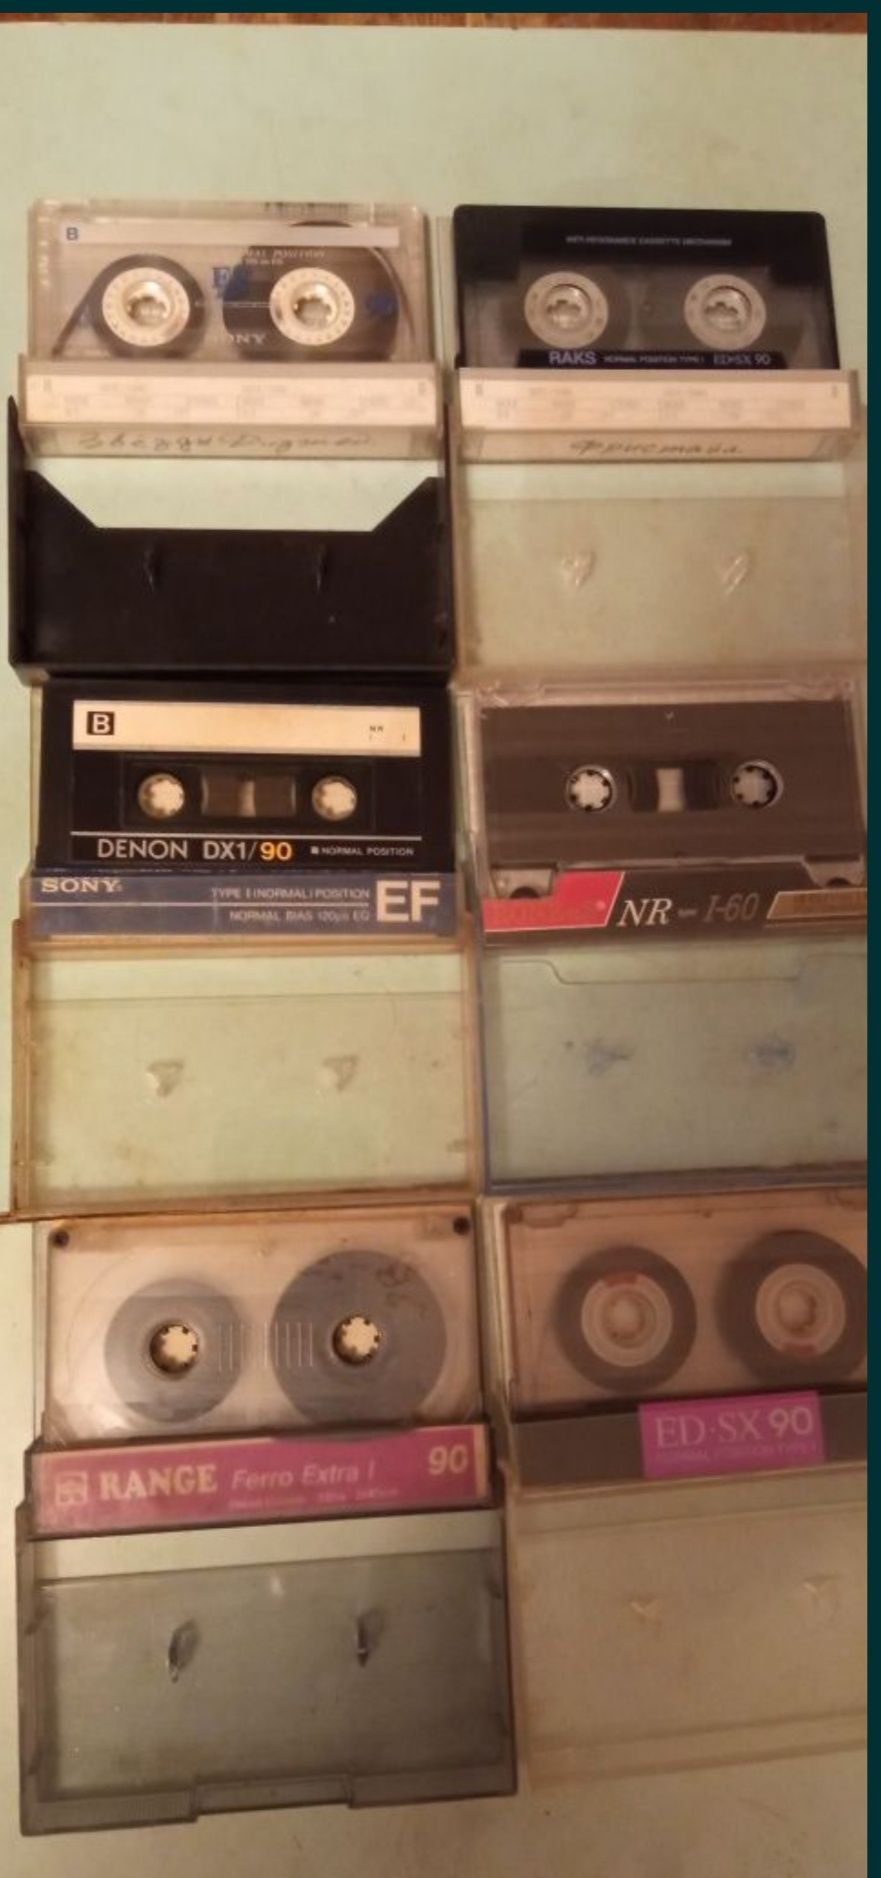 Аудиокассеты с записями лицензионные в отличном состоянии.